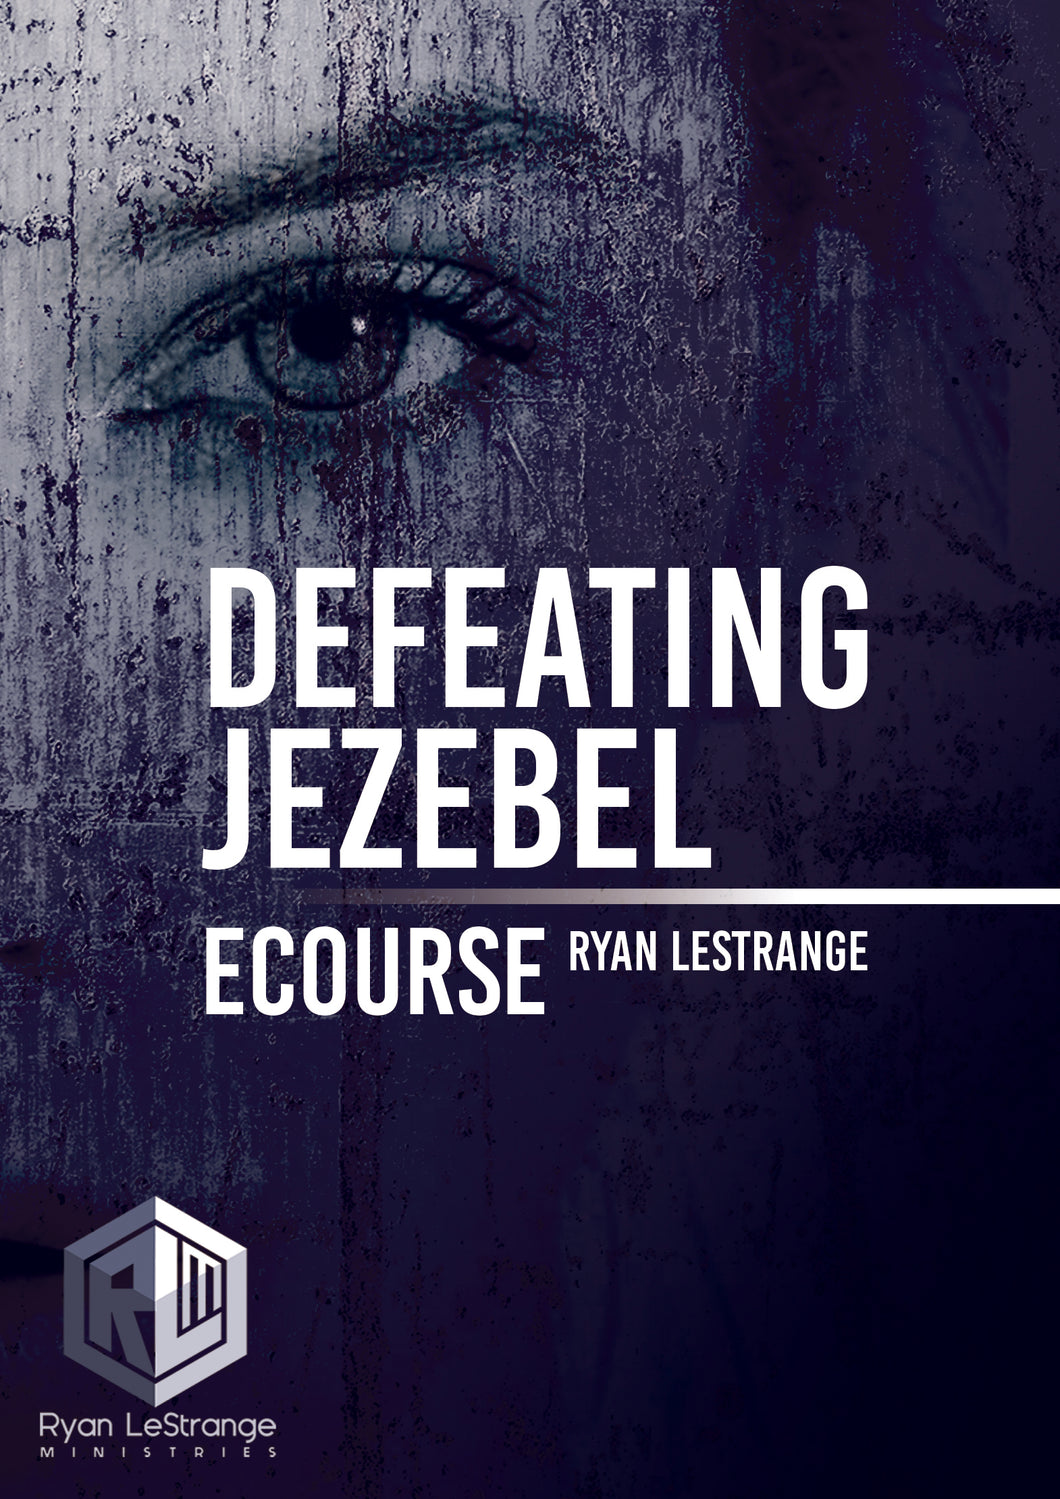 Defeating Jezebel ecourse